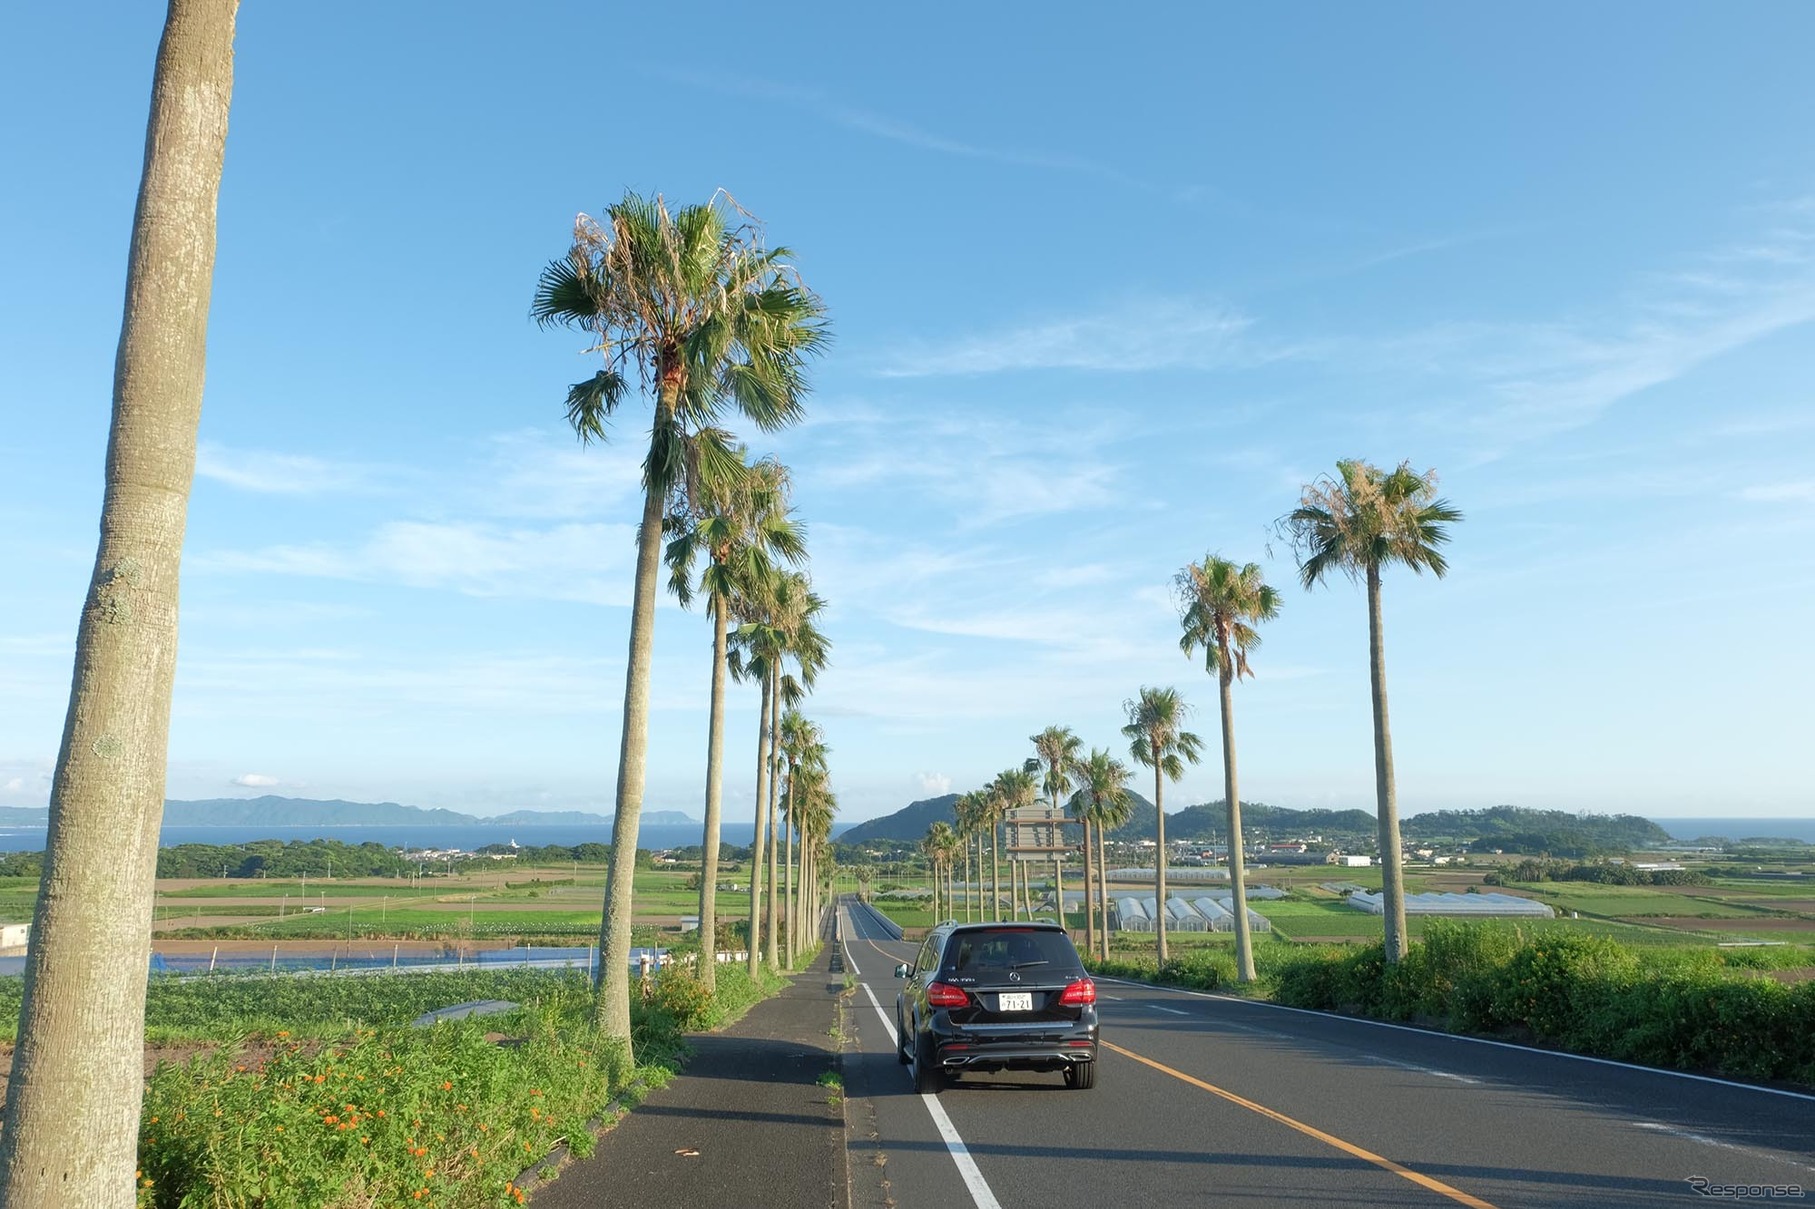 薩摩半島最南端、長崎鼻に向かうロード。いよいよ南になったなという雰囲気が漂う場所だ。